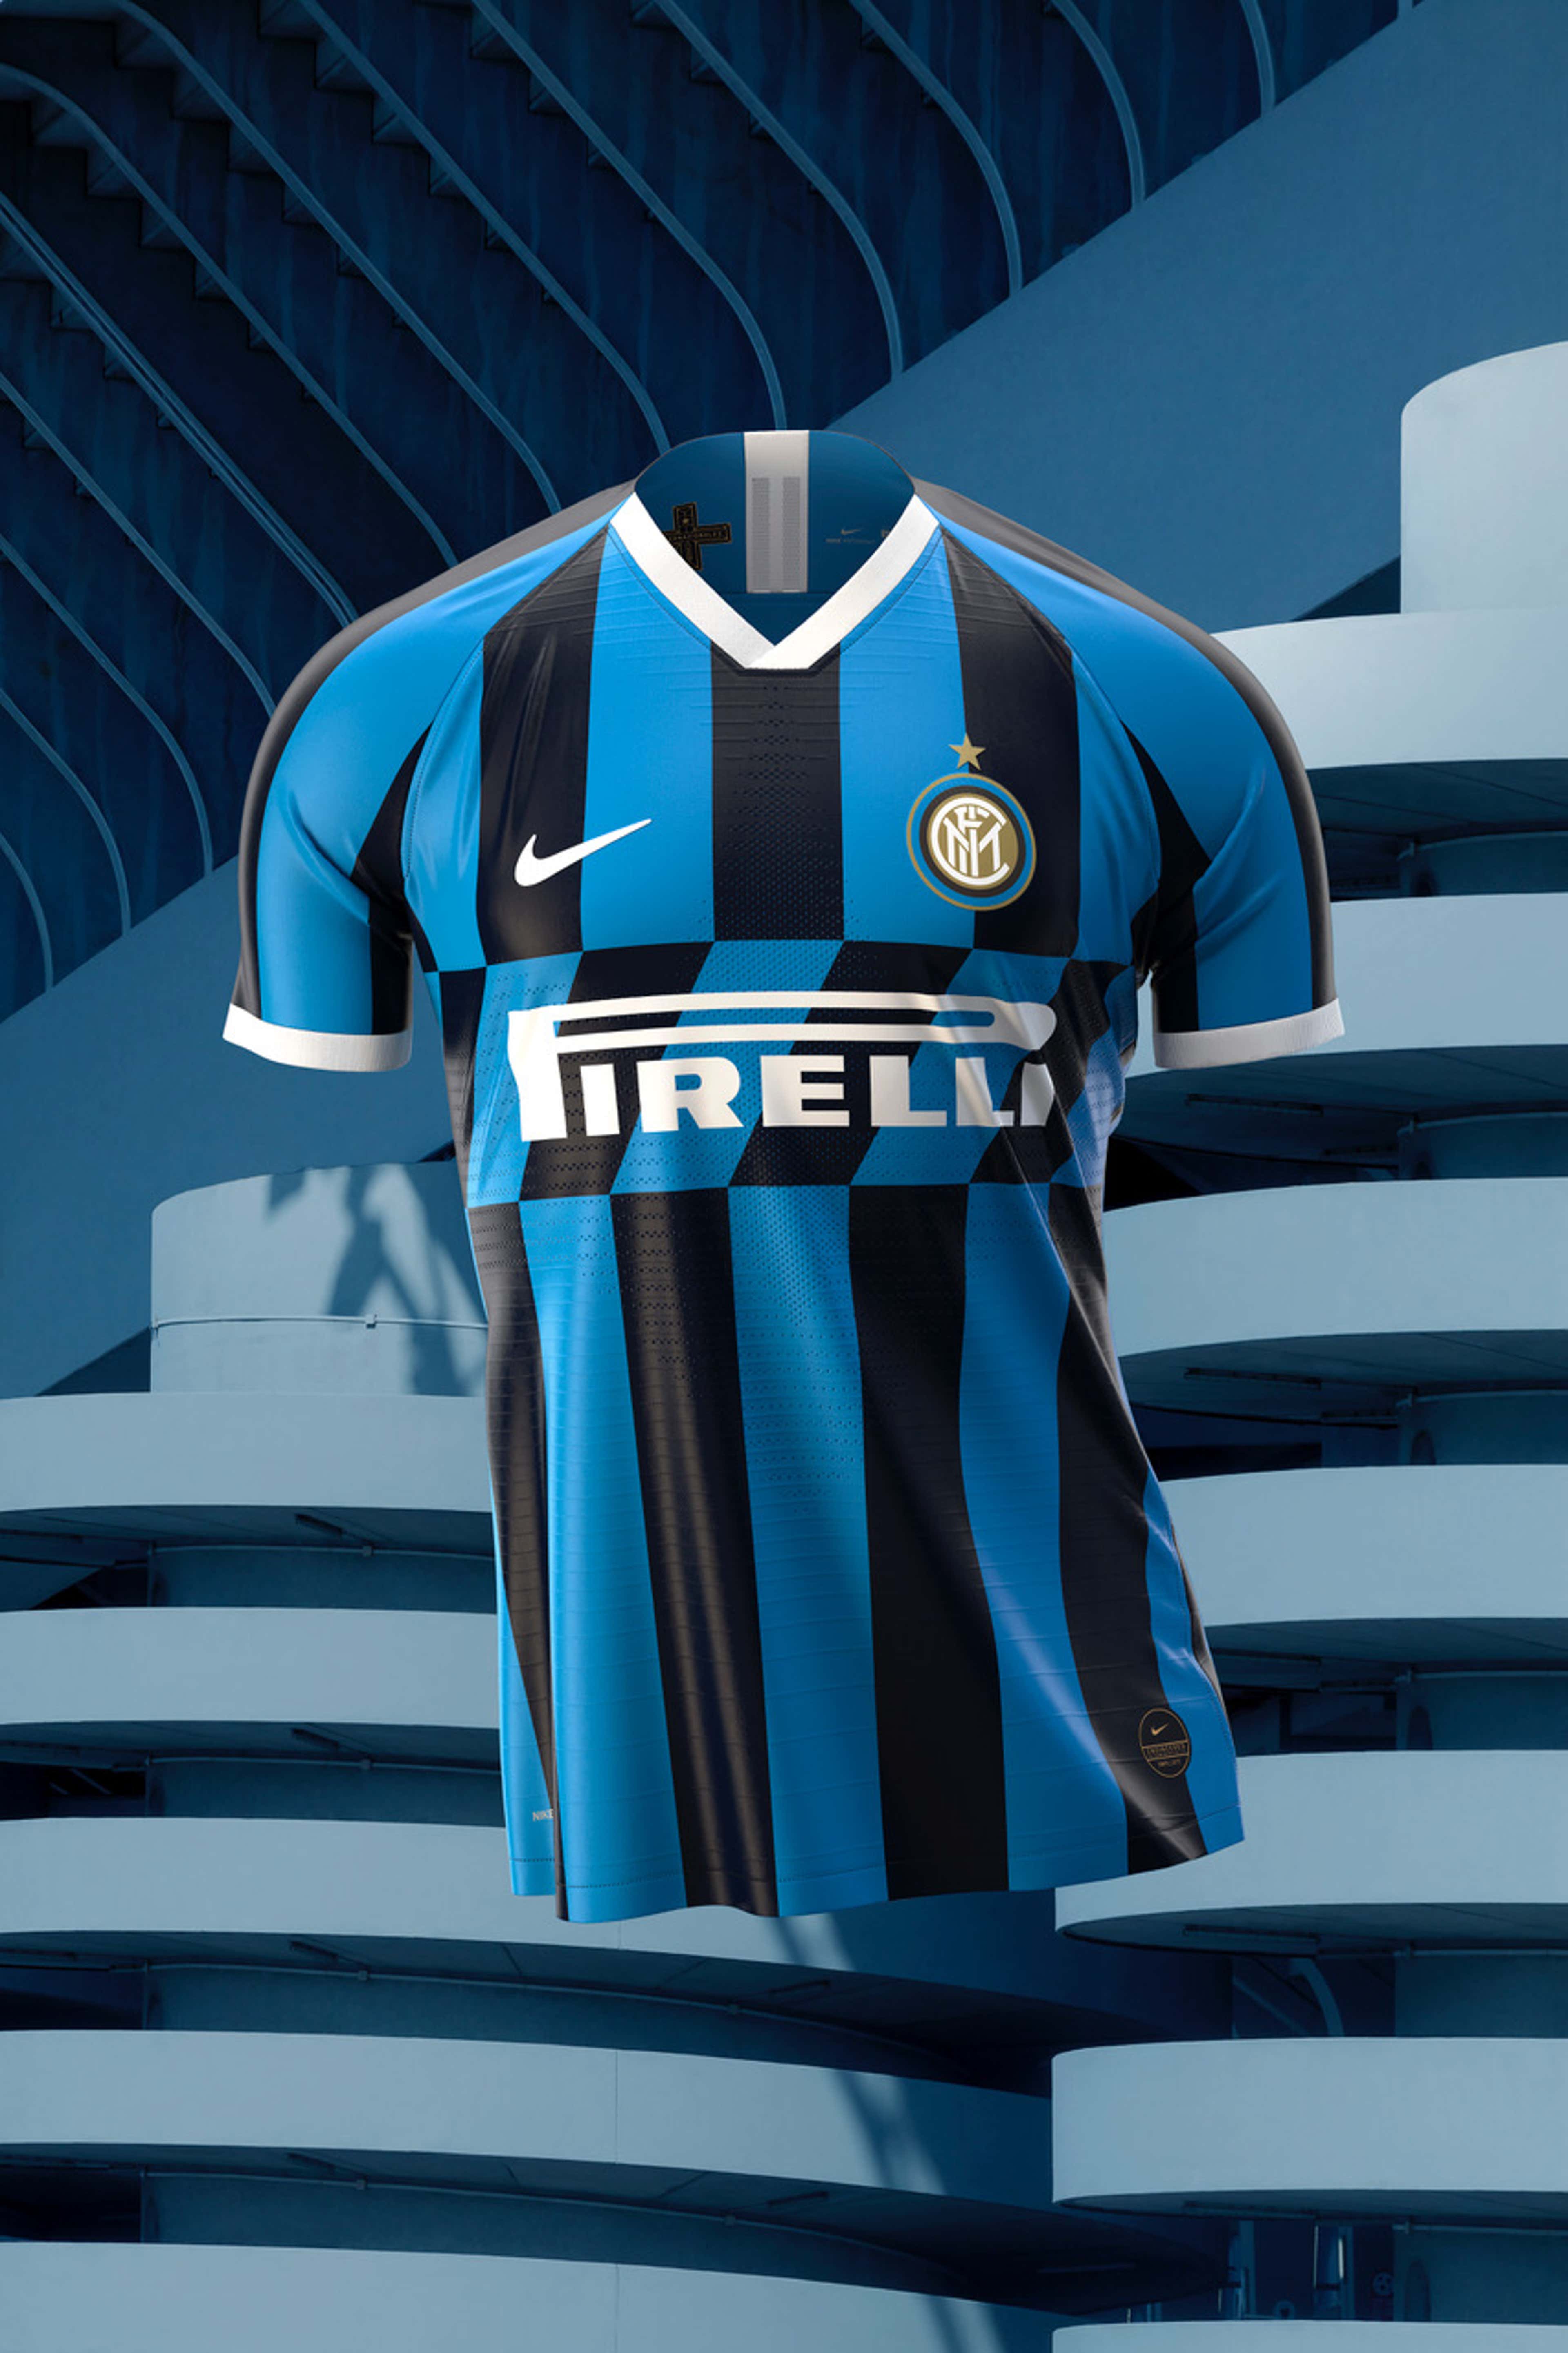 L'Inter presenta la prima maglia della stagione 2019/20